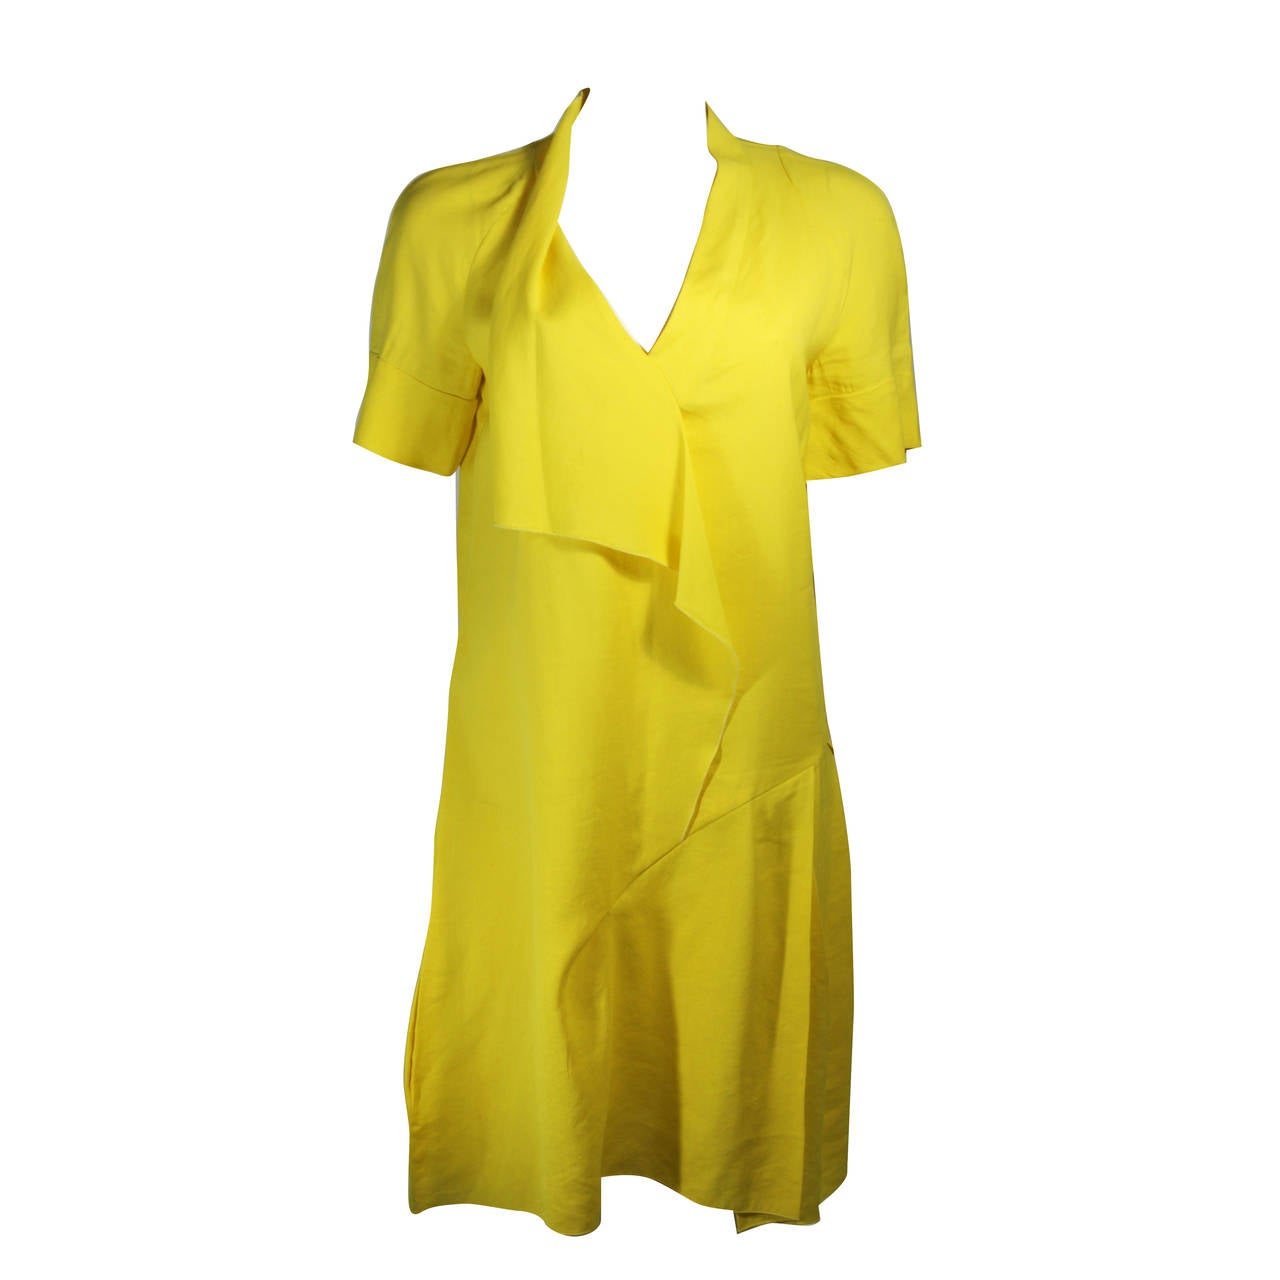 Marni Draped Yellow Linen Dress Size 6